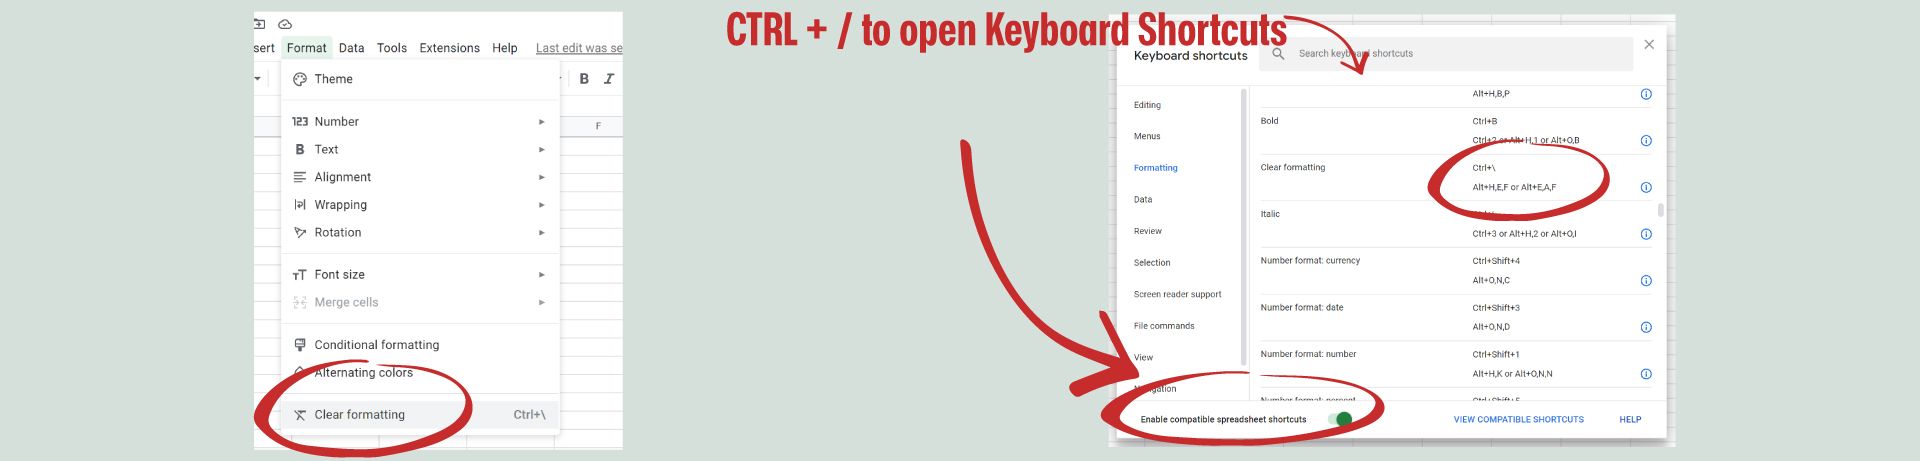 Google Sheets Screenshot of format and keyboard shortcuts menus